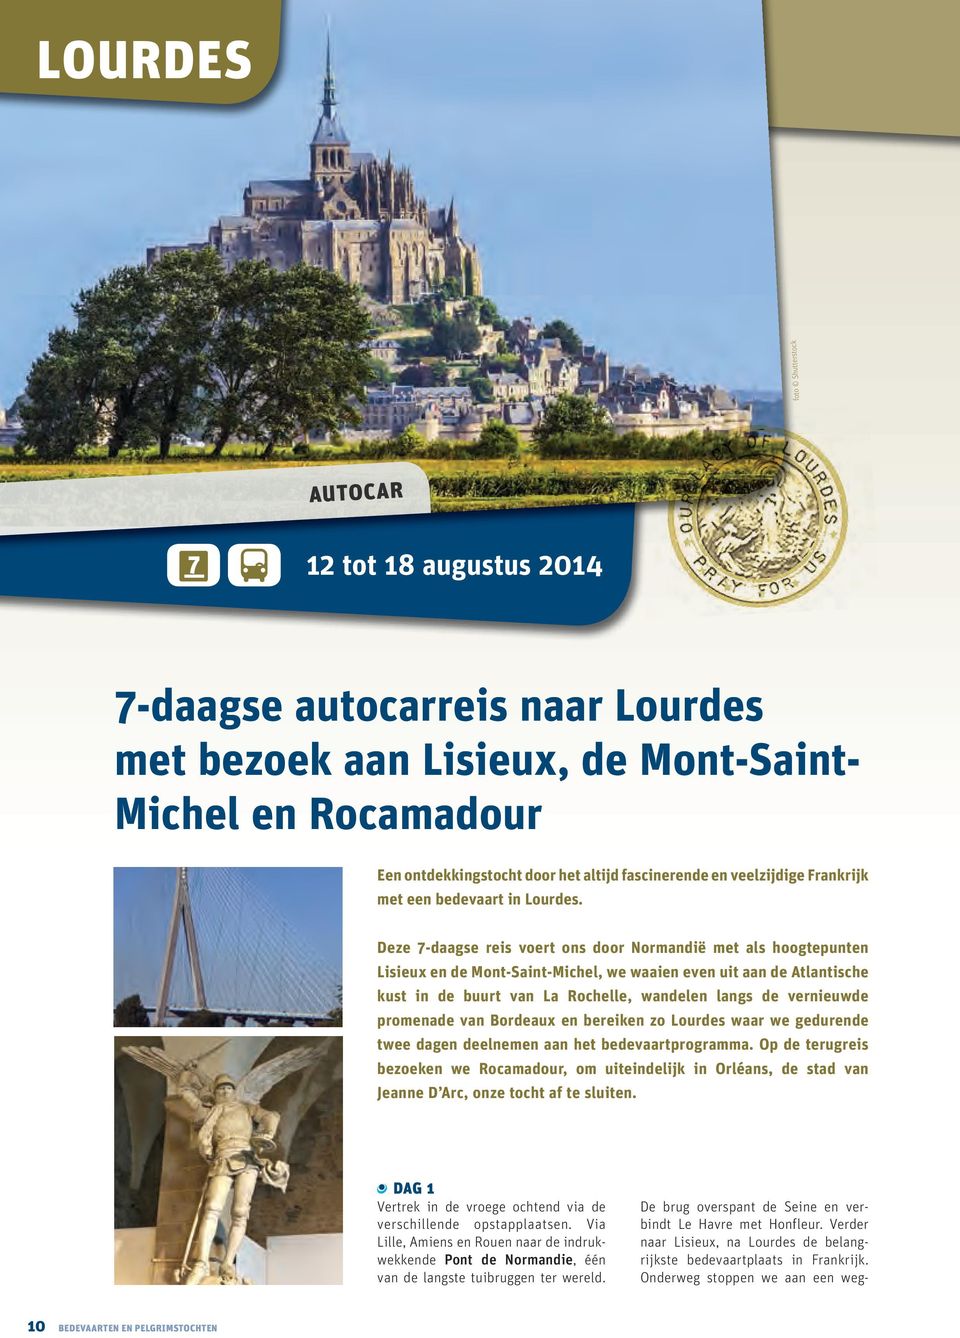 Deze 7-daagse reis voert ons door Normandië met als hoogtepunten Lisieux en de Mont-Saint-Michel, we waaien even uit aan de Atlantische kust in de buurt van La Rochelle, wandelen langs de vernieuwde